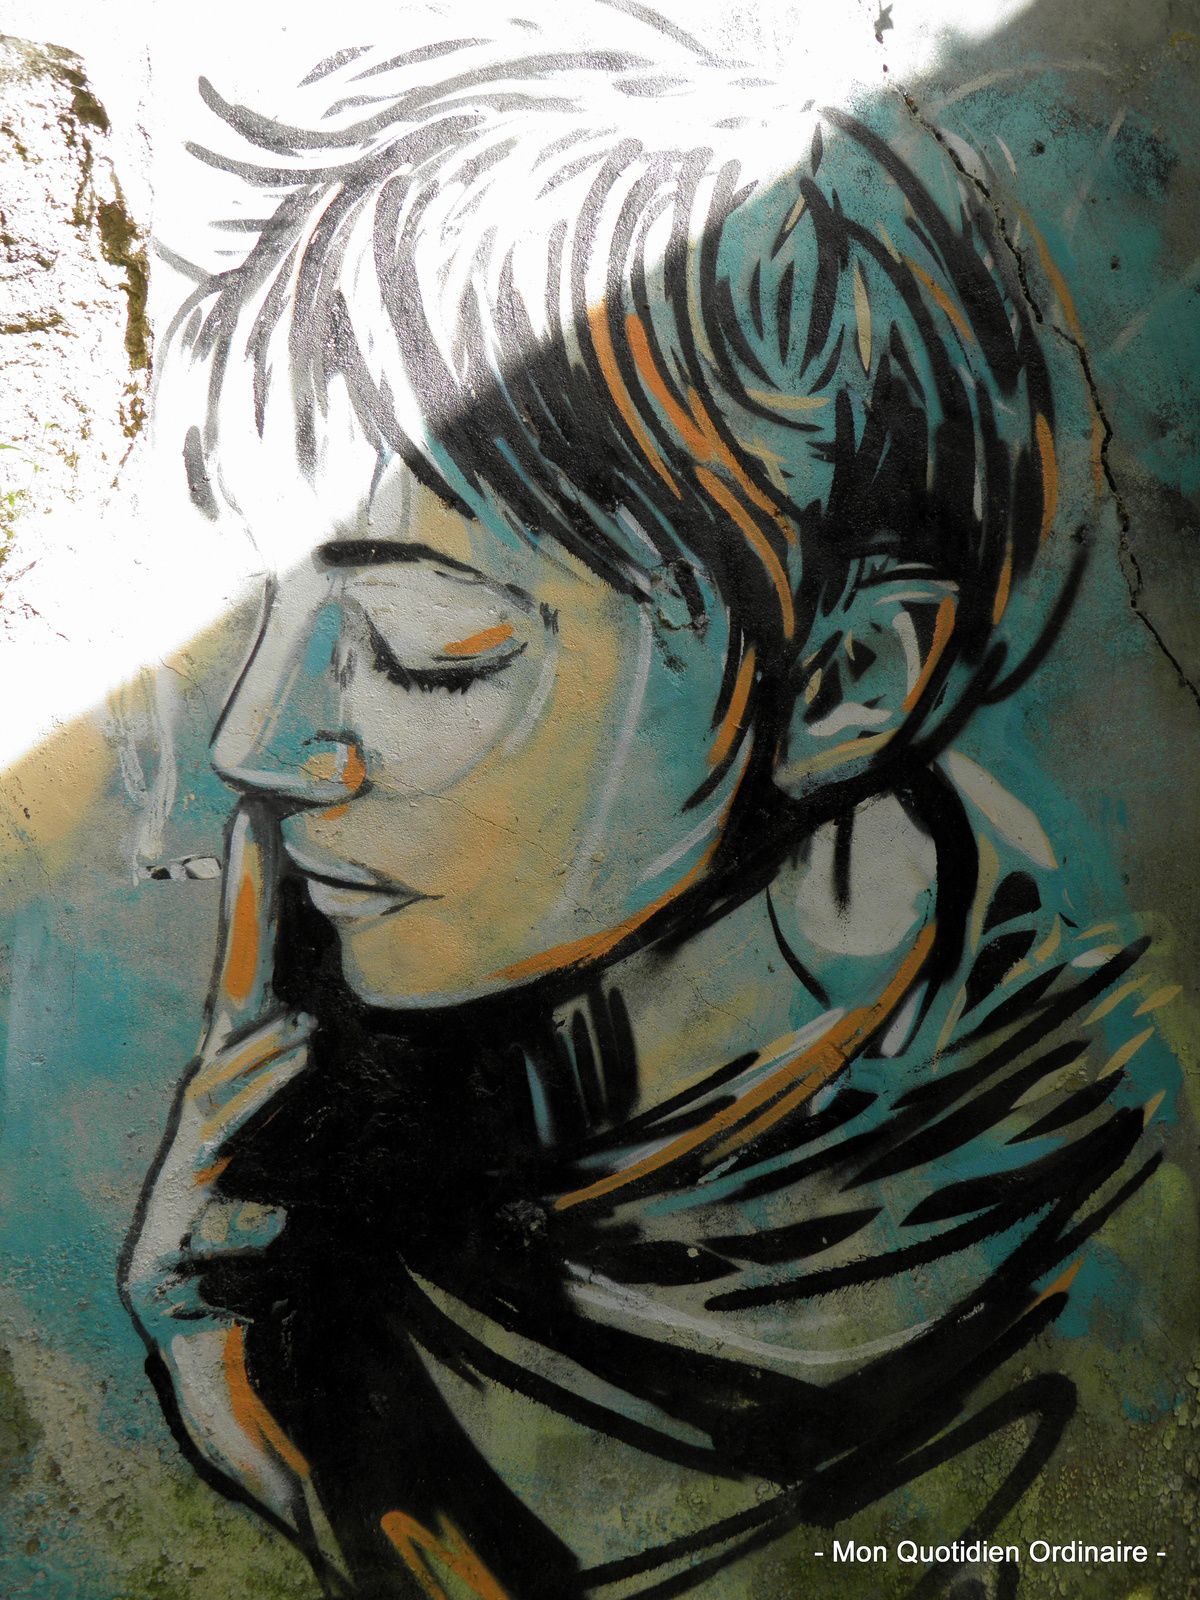 L'art urbain à Brest, entre graffitis et poésie